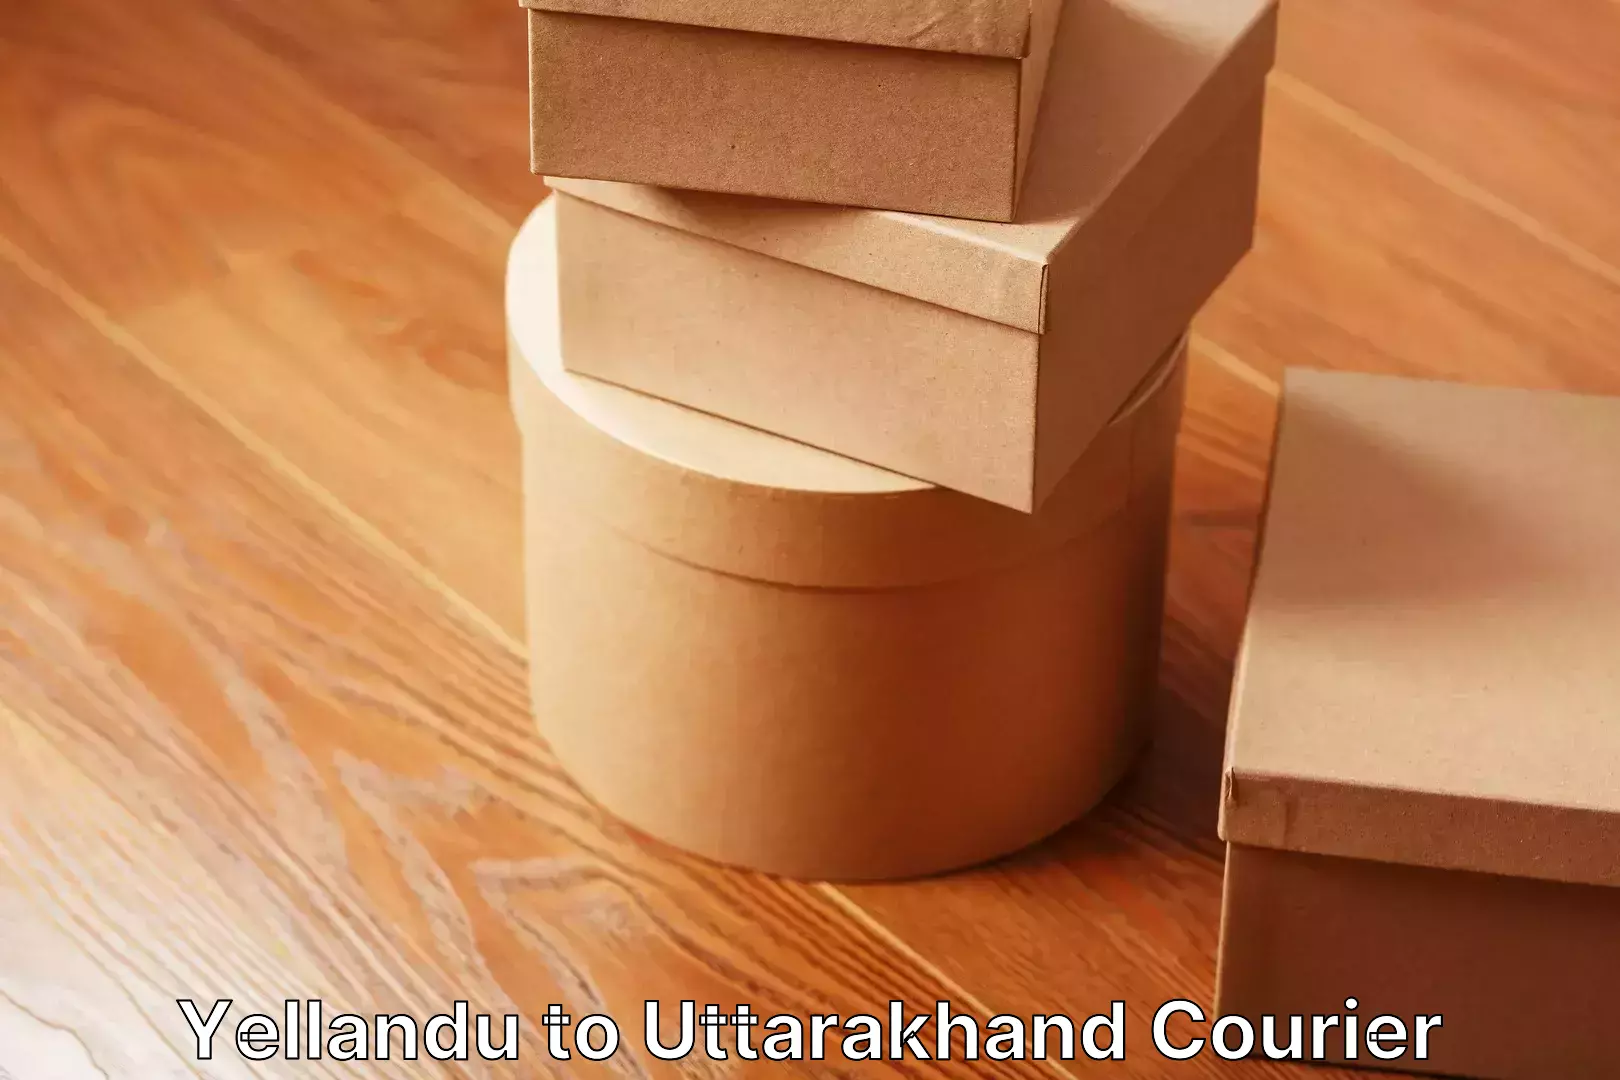 Personalized moving service Yellandu to Uttarakhand